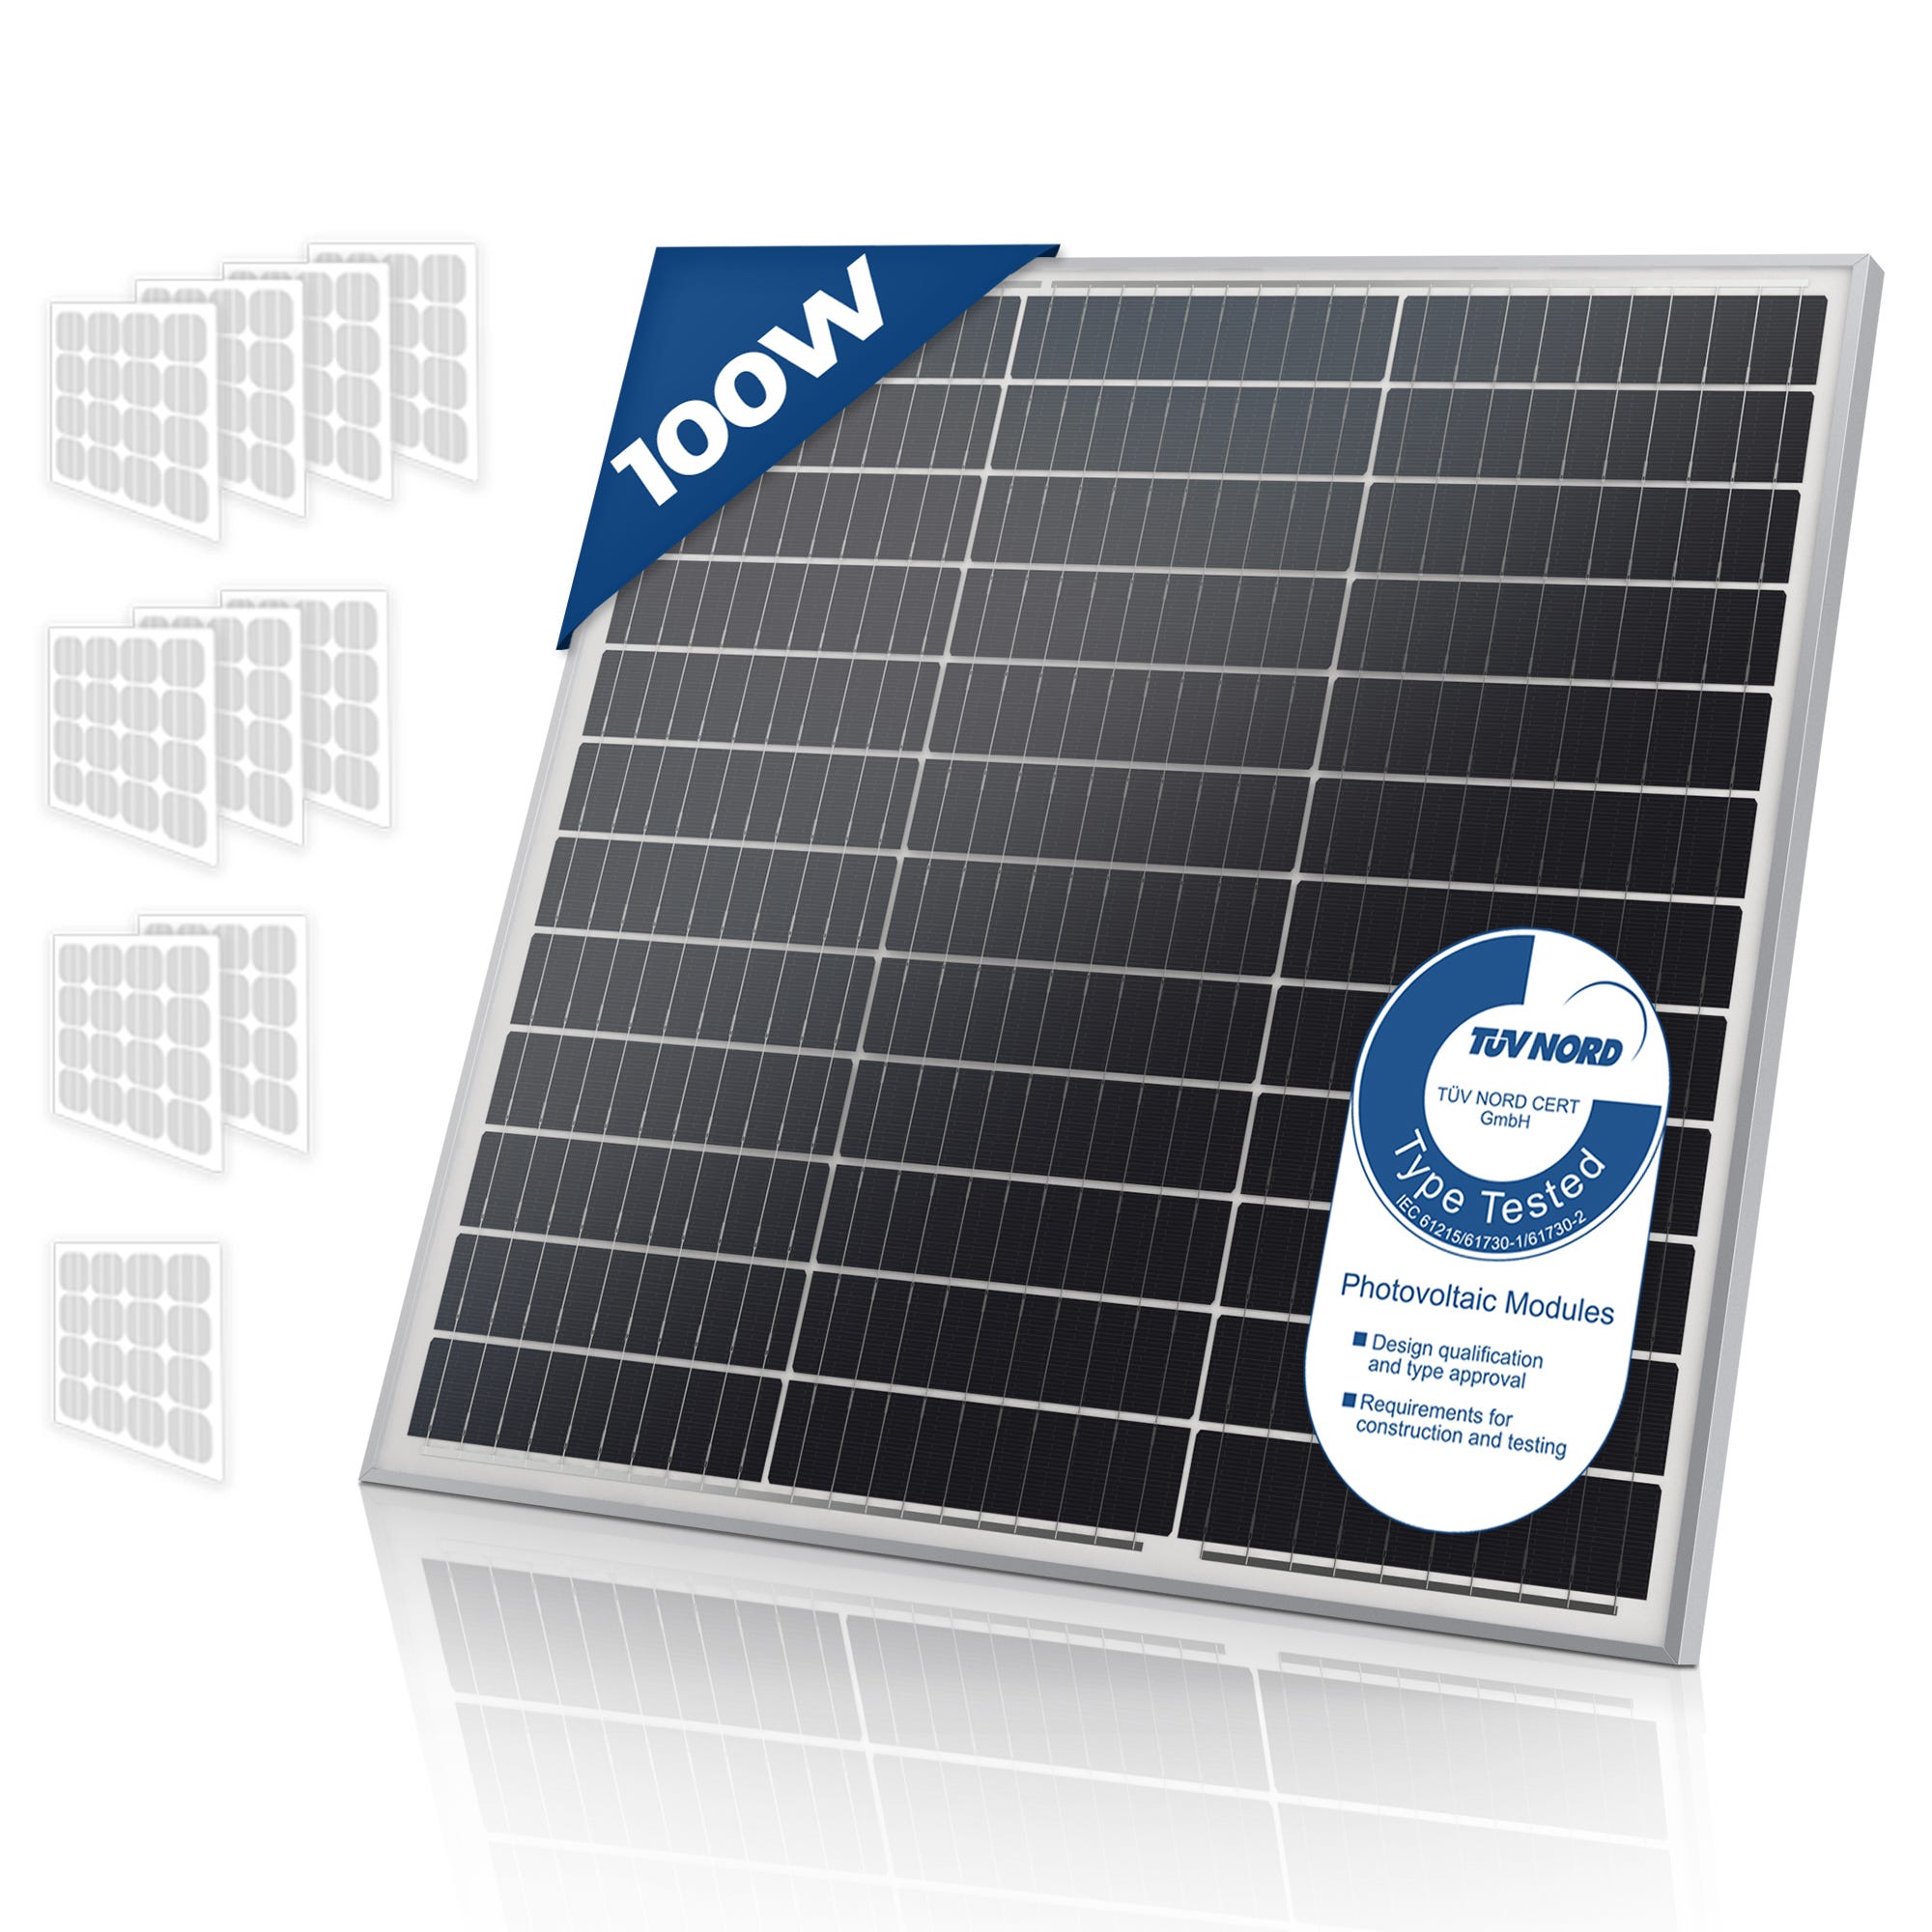 Solare Monocristallino - Fotovoltaico, Silicio, 100 W, per